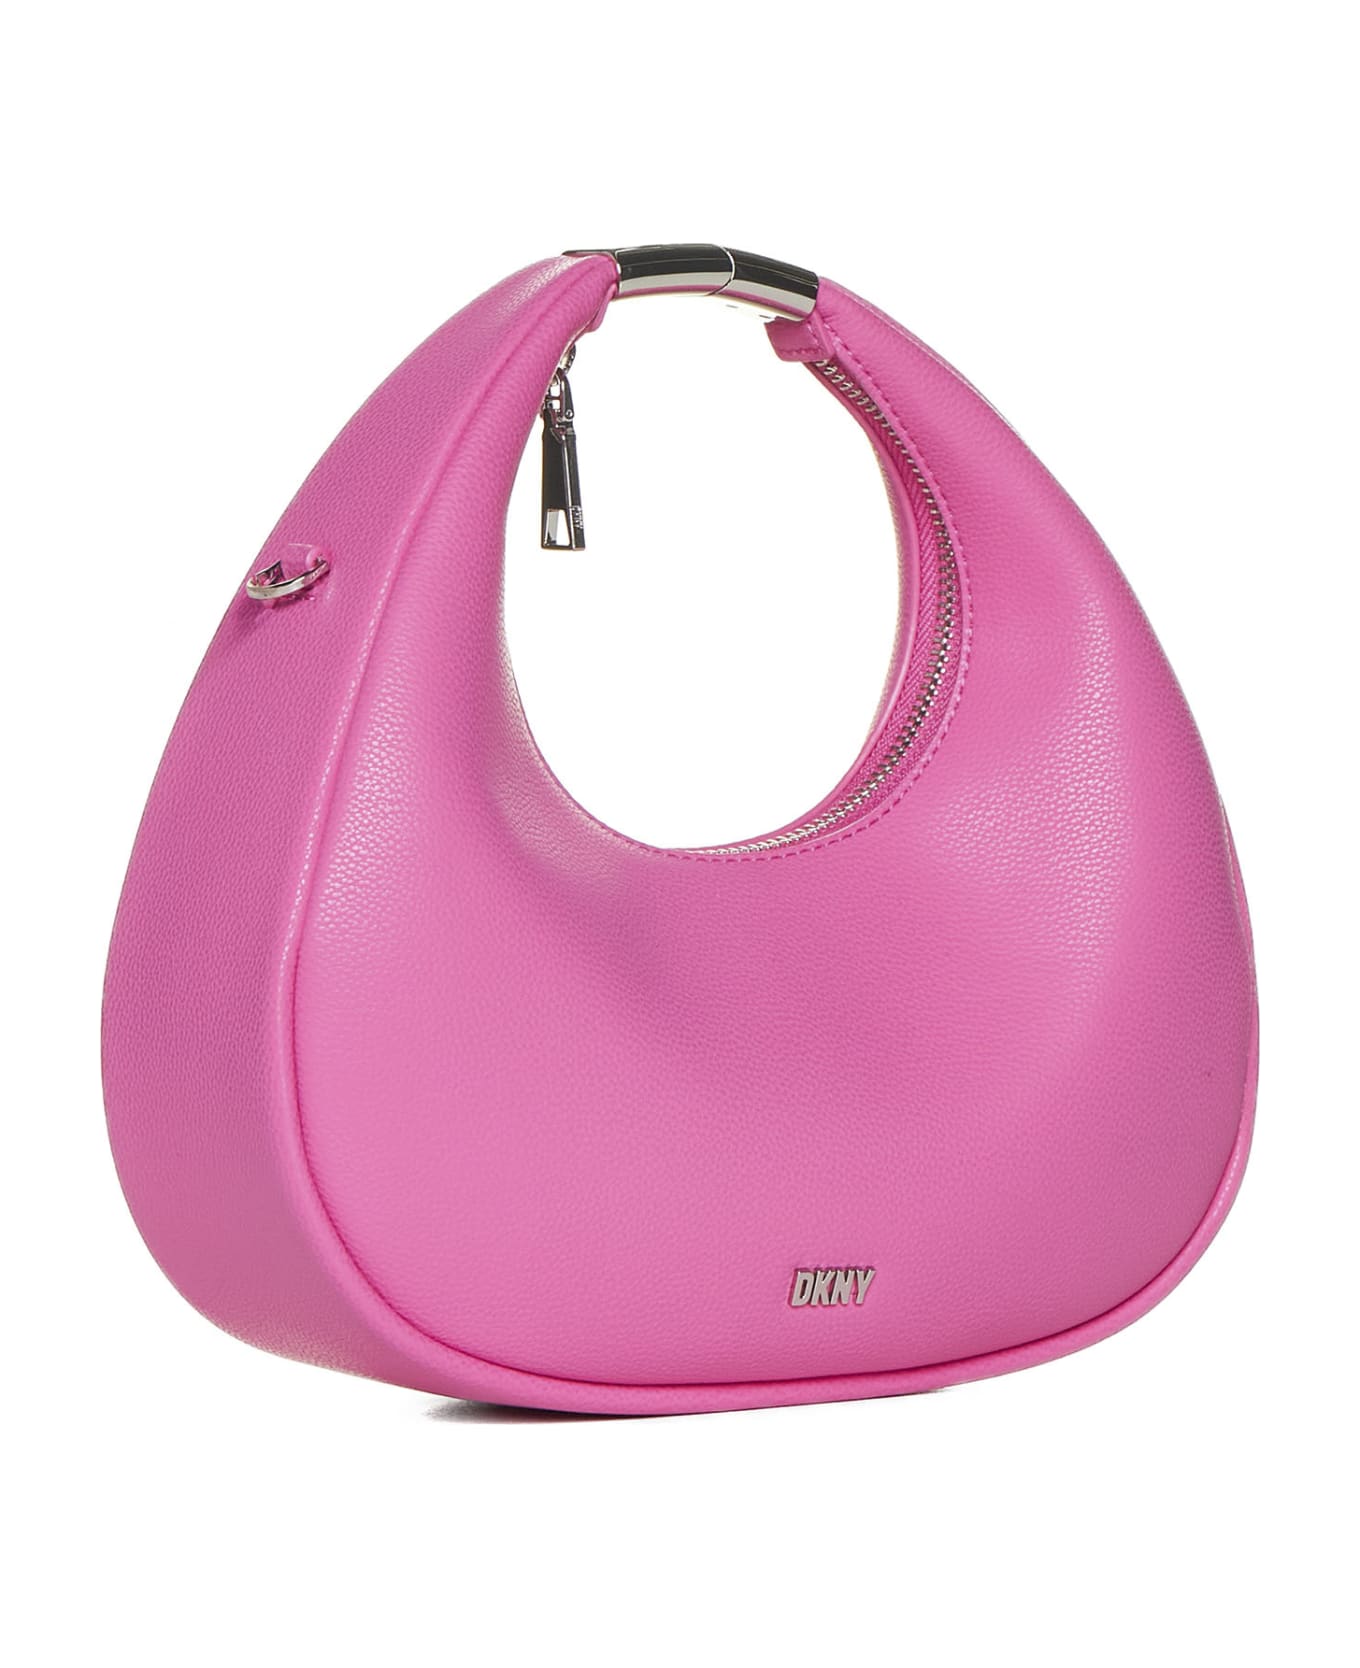 DKNY Shoulder Bag - Hot pink トートバッグ